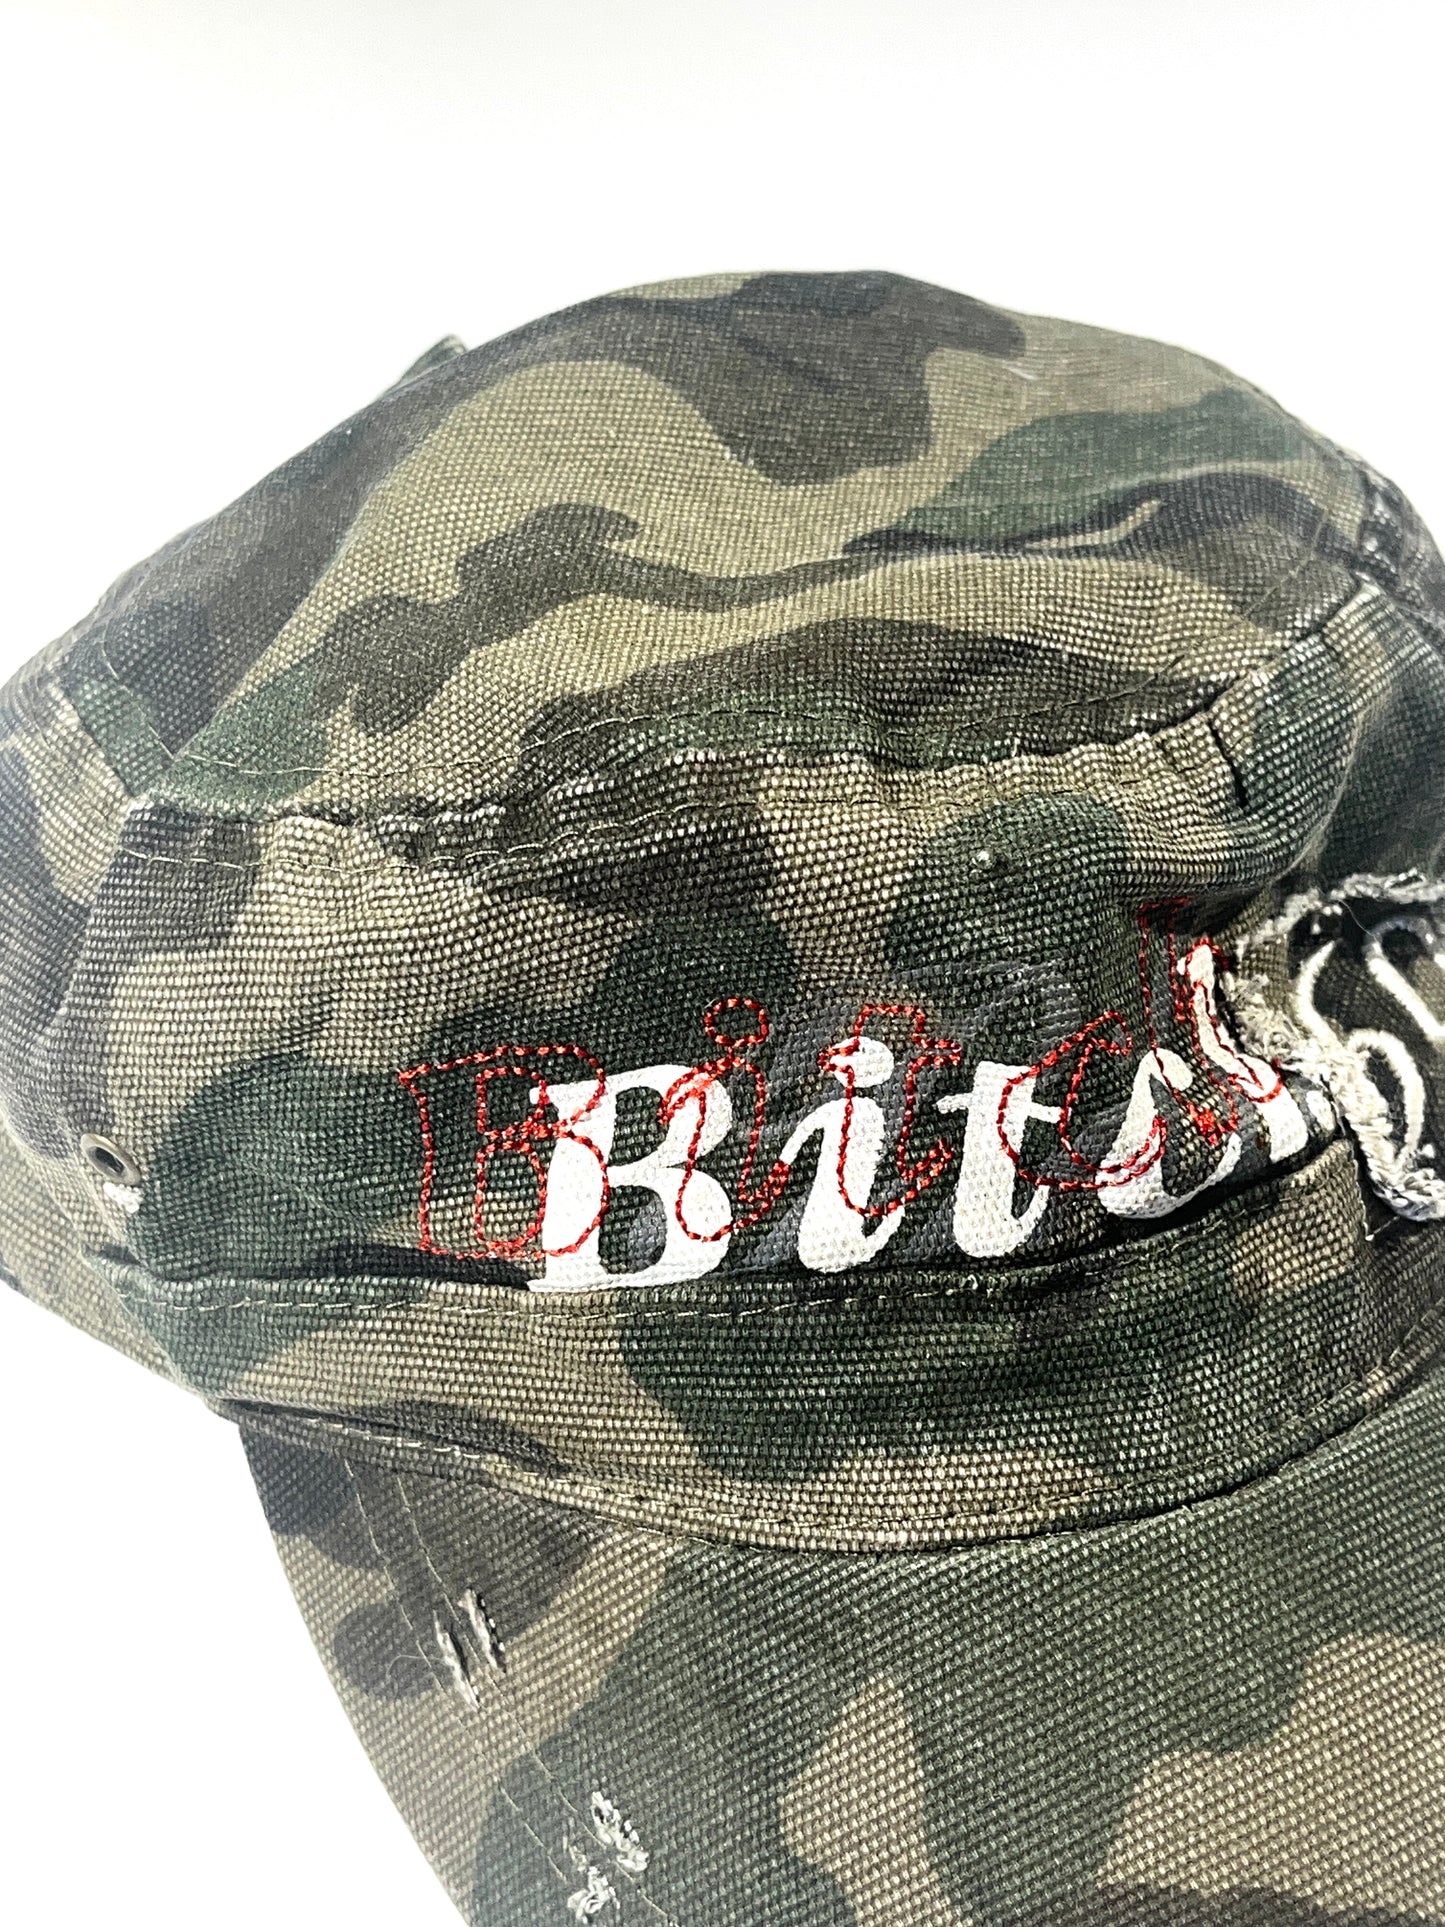 Vintage Bitch Hat Bitch 69 Cap